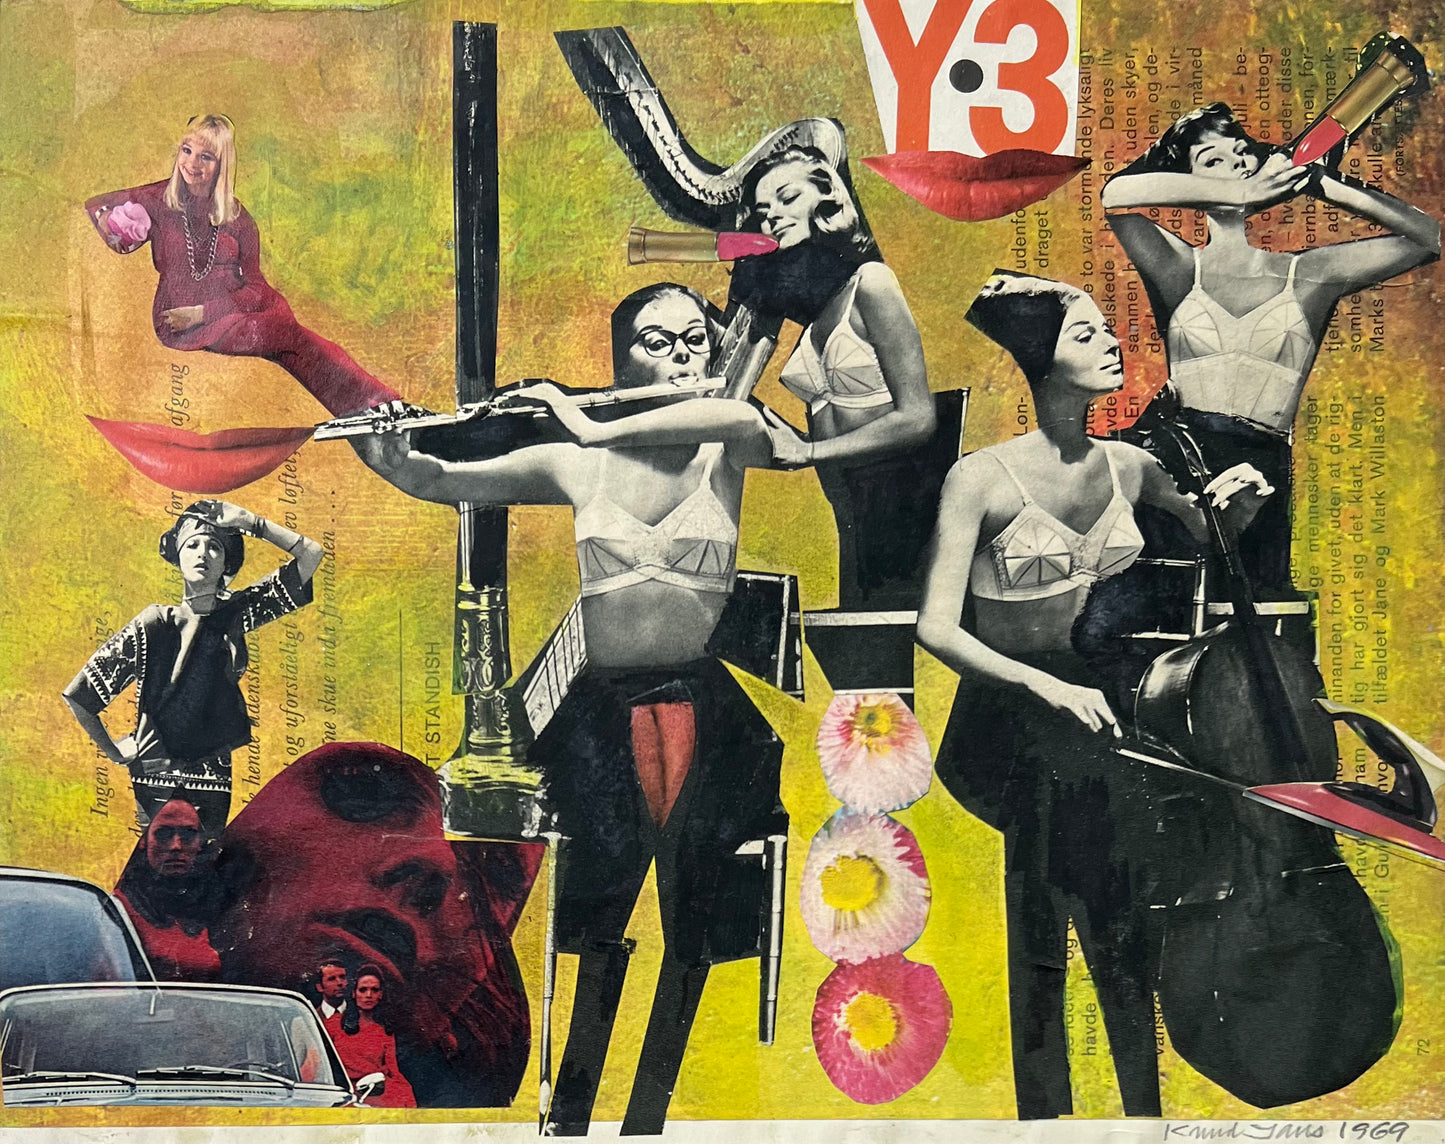 Knud Jans. Collage, 1969